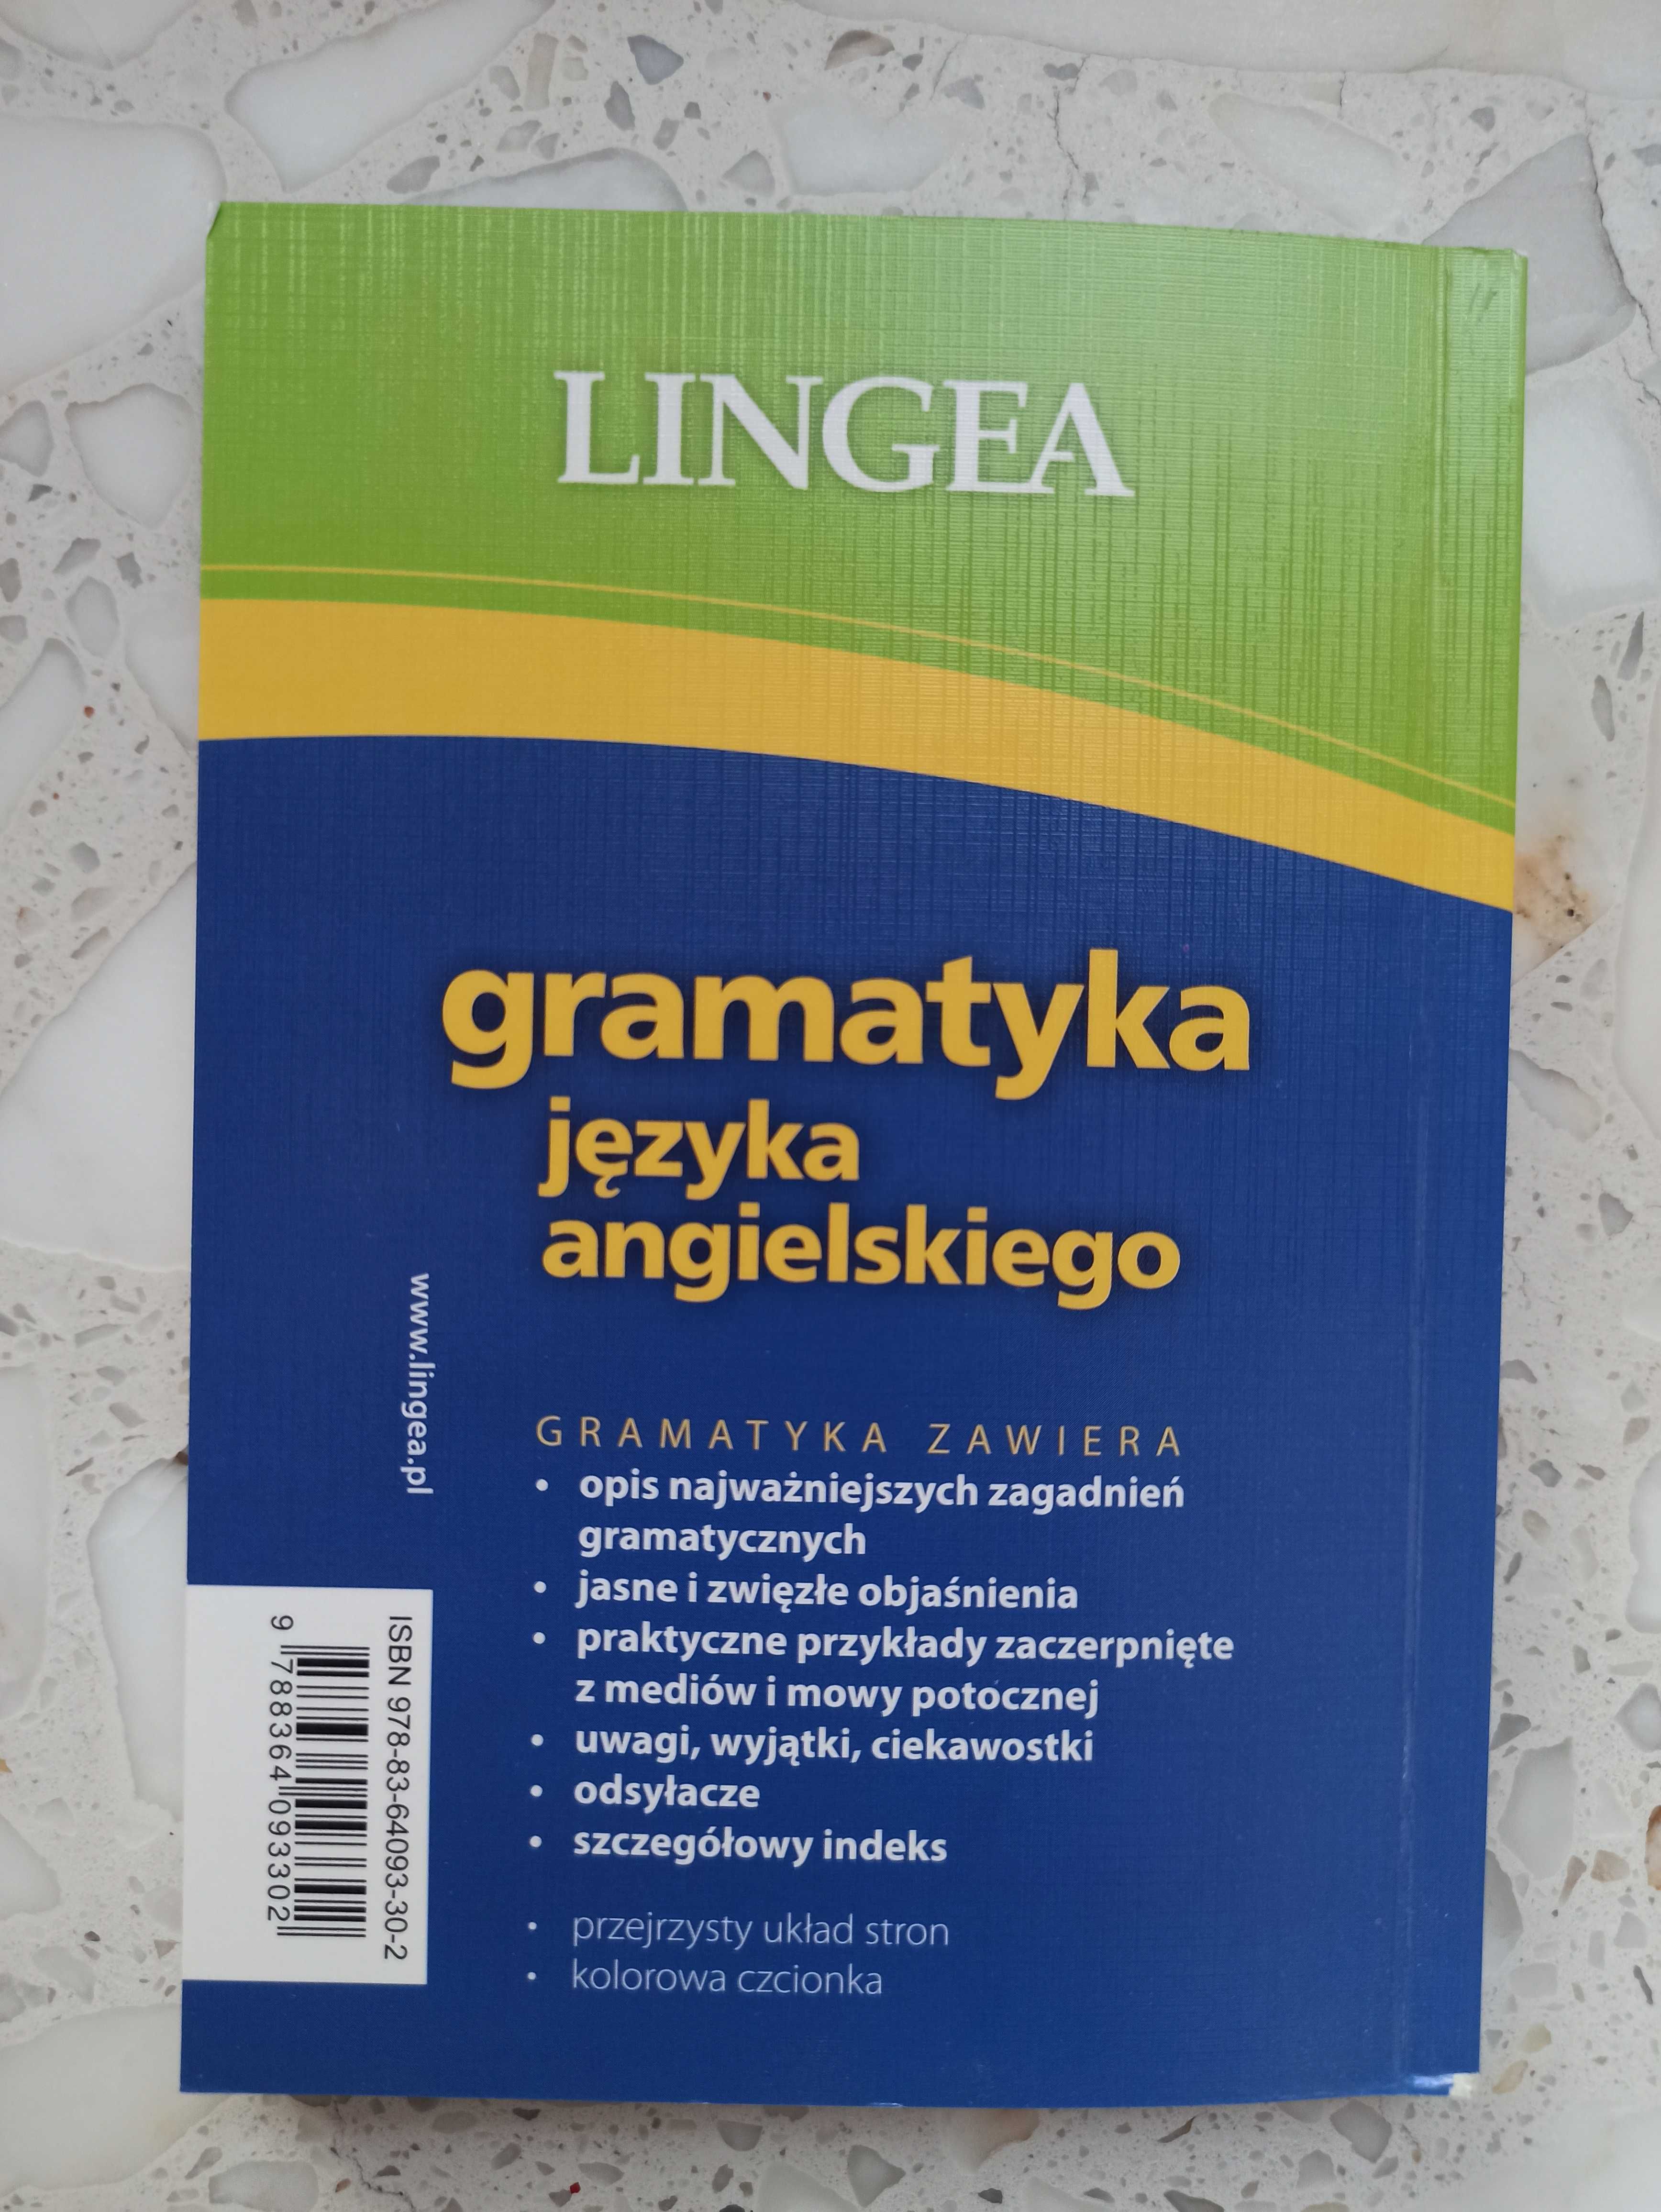 Lingea - Gramatyka języka angielskiego z praktycznymi przykładami